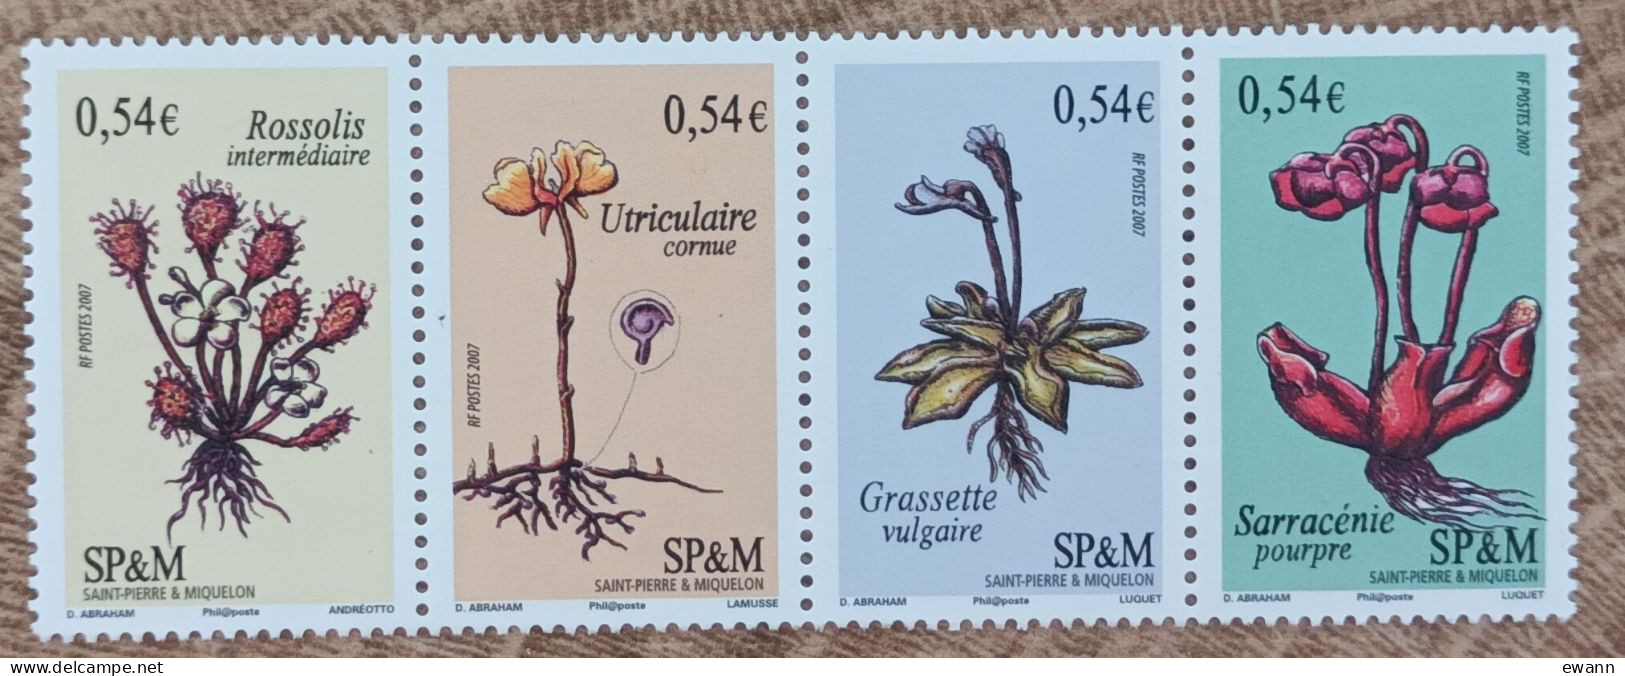 Saint Pierre Et Miquelon - YT N°900 à 903 - Flore / Plantes Vasculaires Carnivores - 2007 - Neuf - Unused Stamps